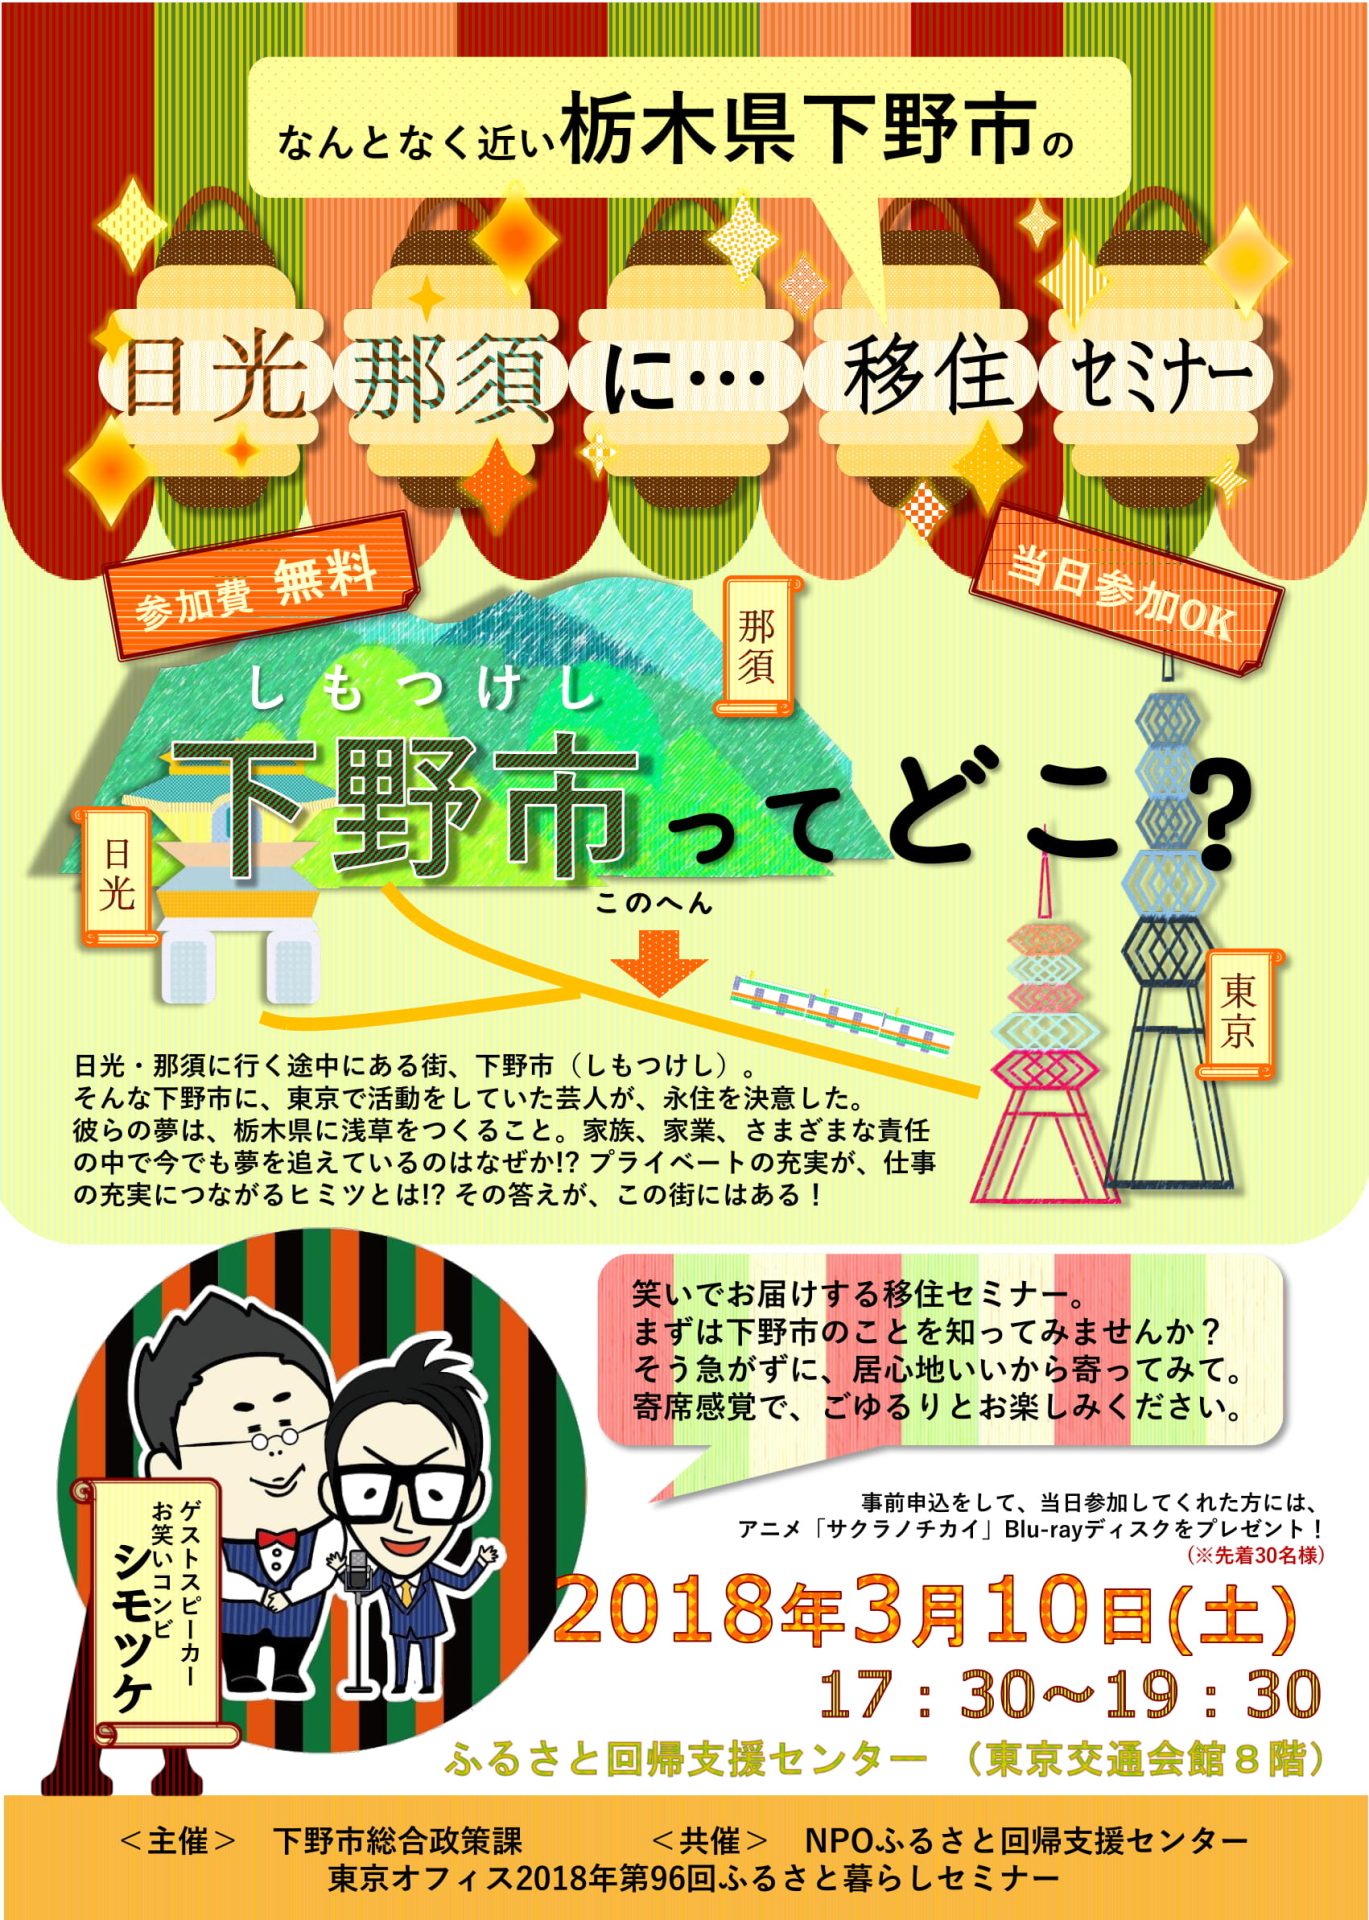 日光・那須になんとなく近い「栃木県下野市」の<Br>笑いでお届けする移住セミナー | 移住関連イベント情報